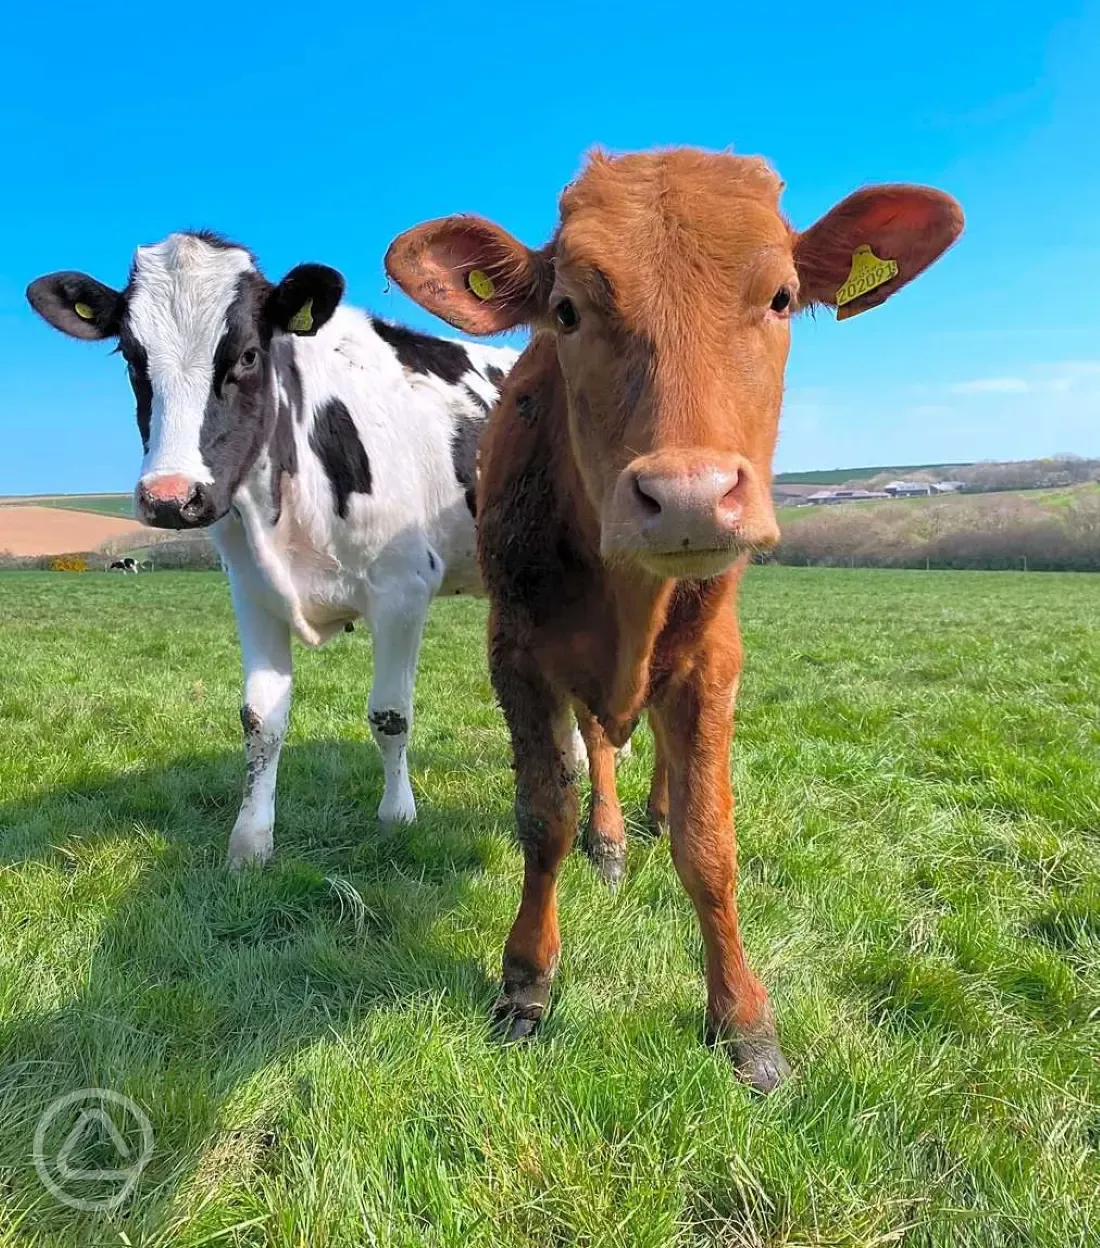 Dairy farm cows